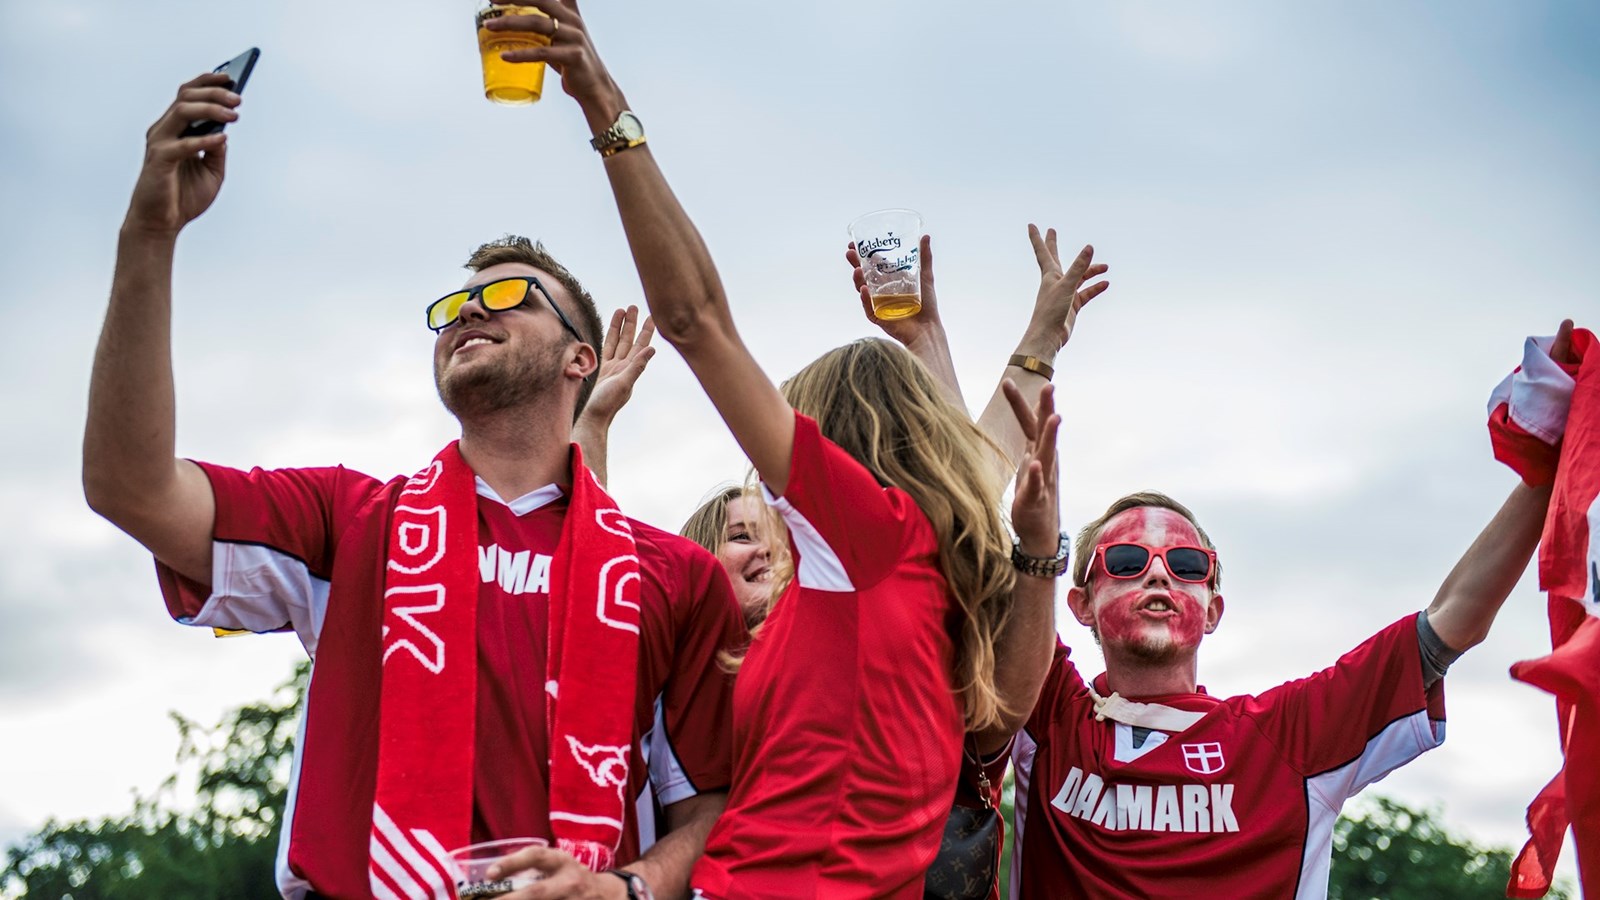 Fantastiske Fodboldfester skal bringe danskerne sammen